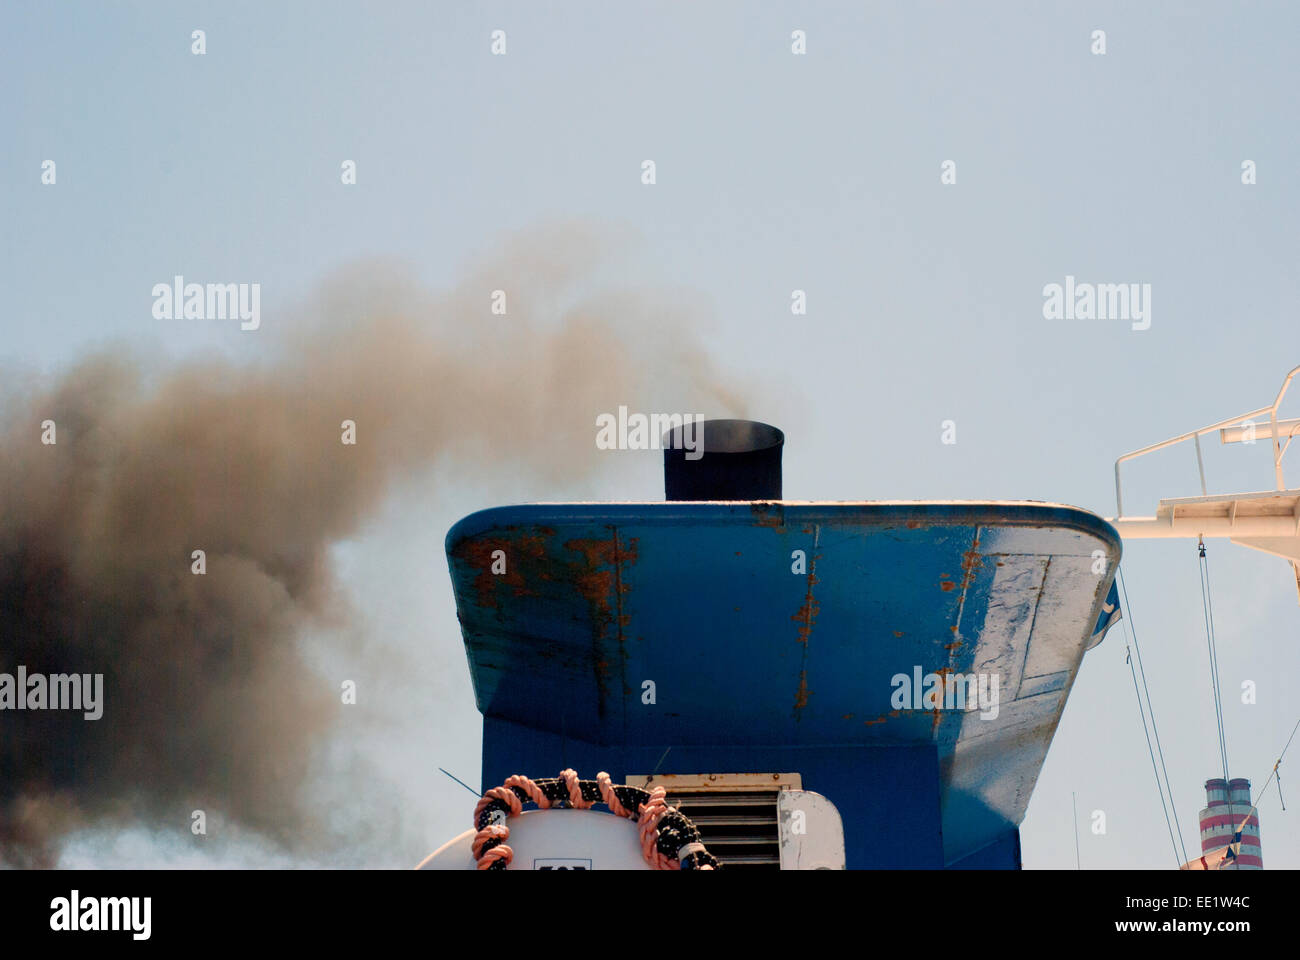 Abfahrt Schiff mit Rauchentwicklung und die Luftverschmutzung und den grauen Himmel Stockfoto